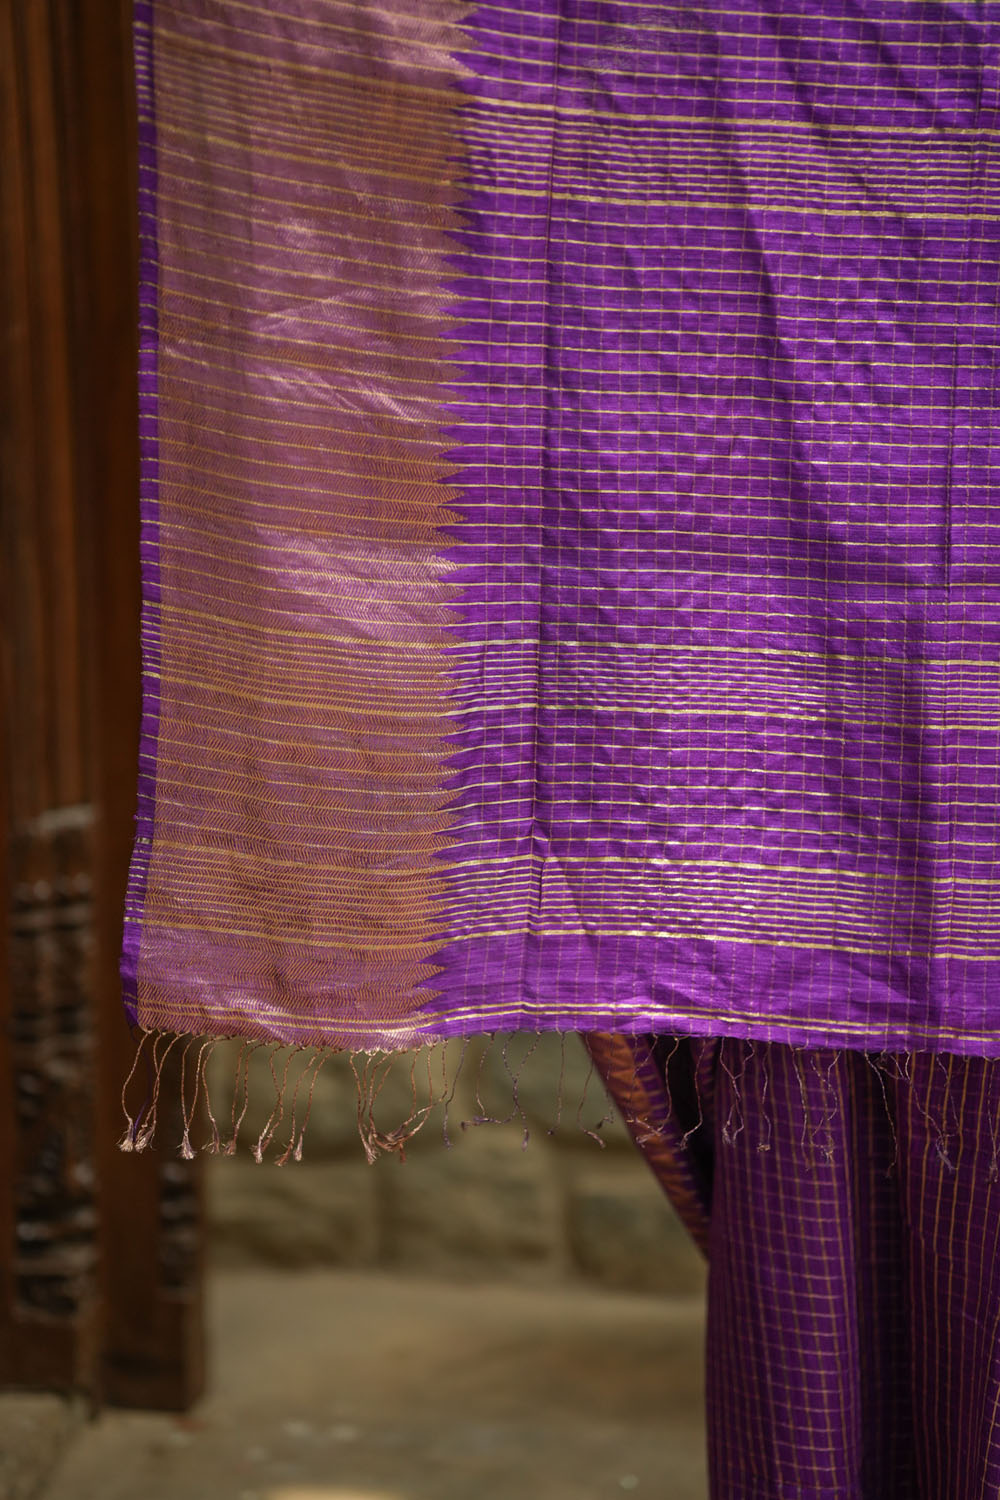 Matka Silk Saree in Purple with Zari Checks and Wide Zari Temple Border | SILK MARK CERTIFIED